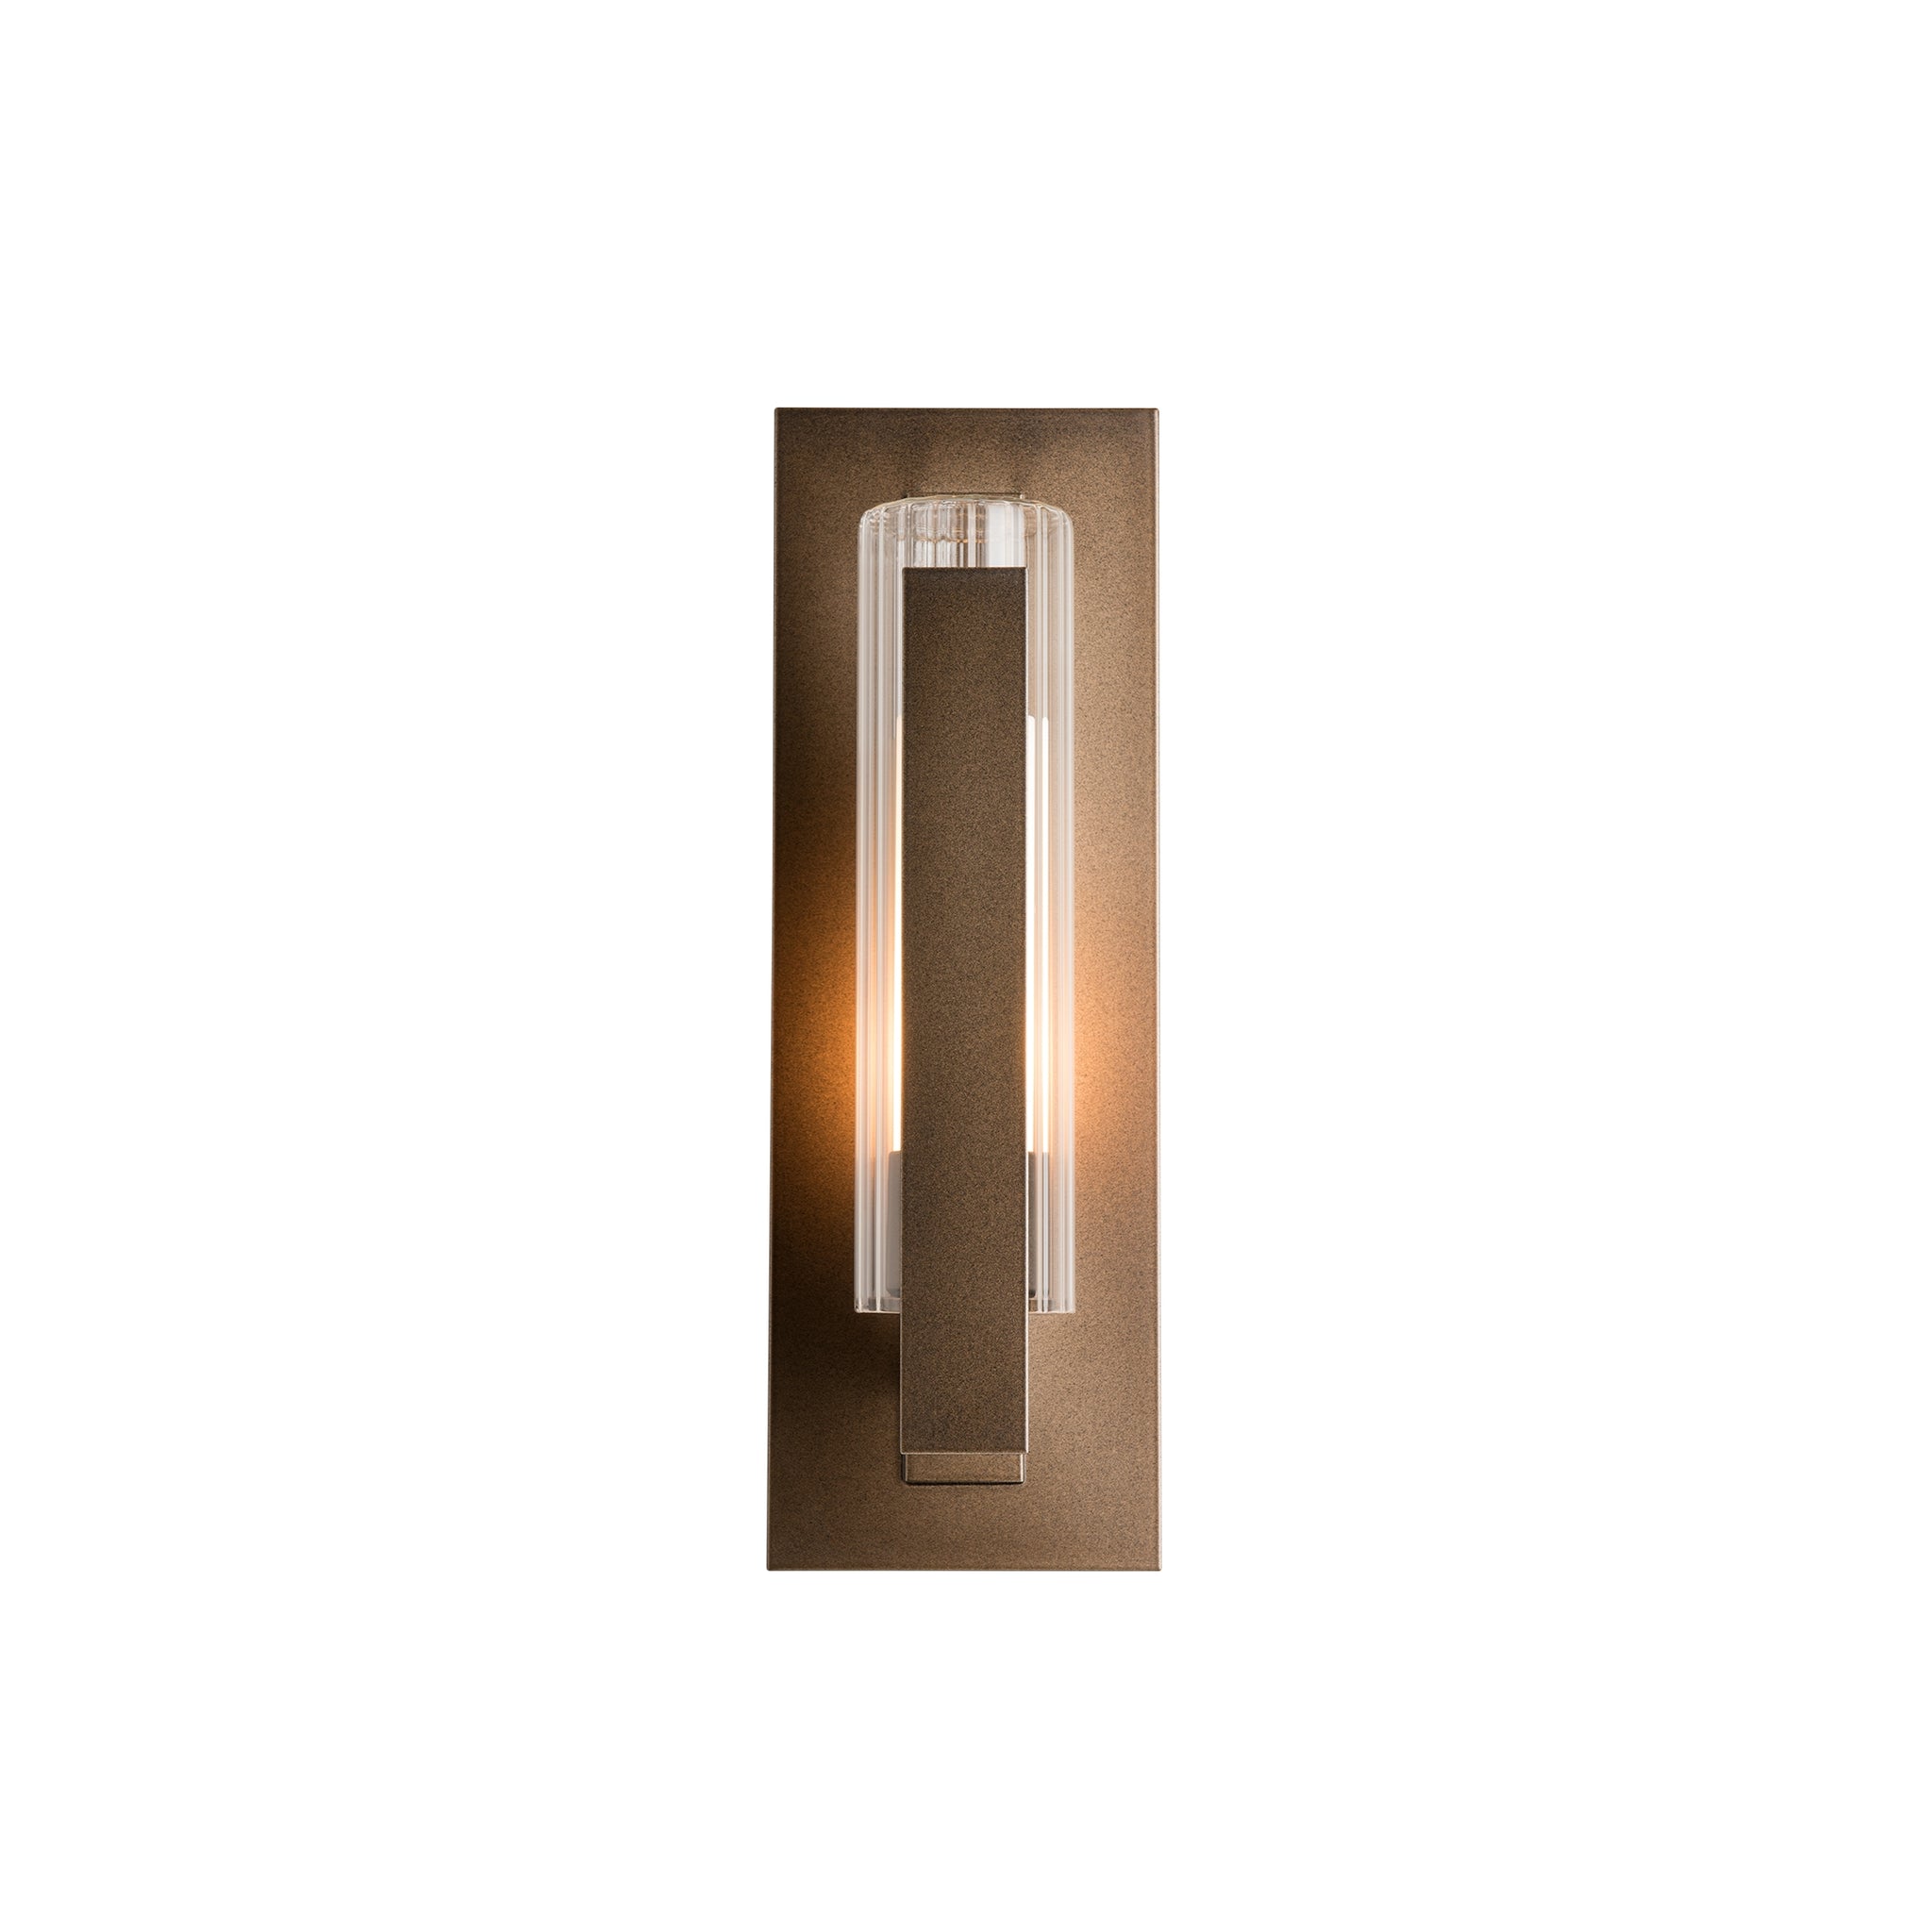 Vertical Bar Outdoor-Wall-Light Coastal Bronze (75)